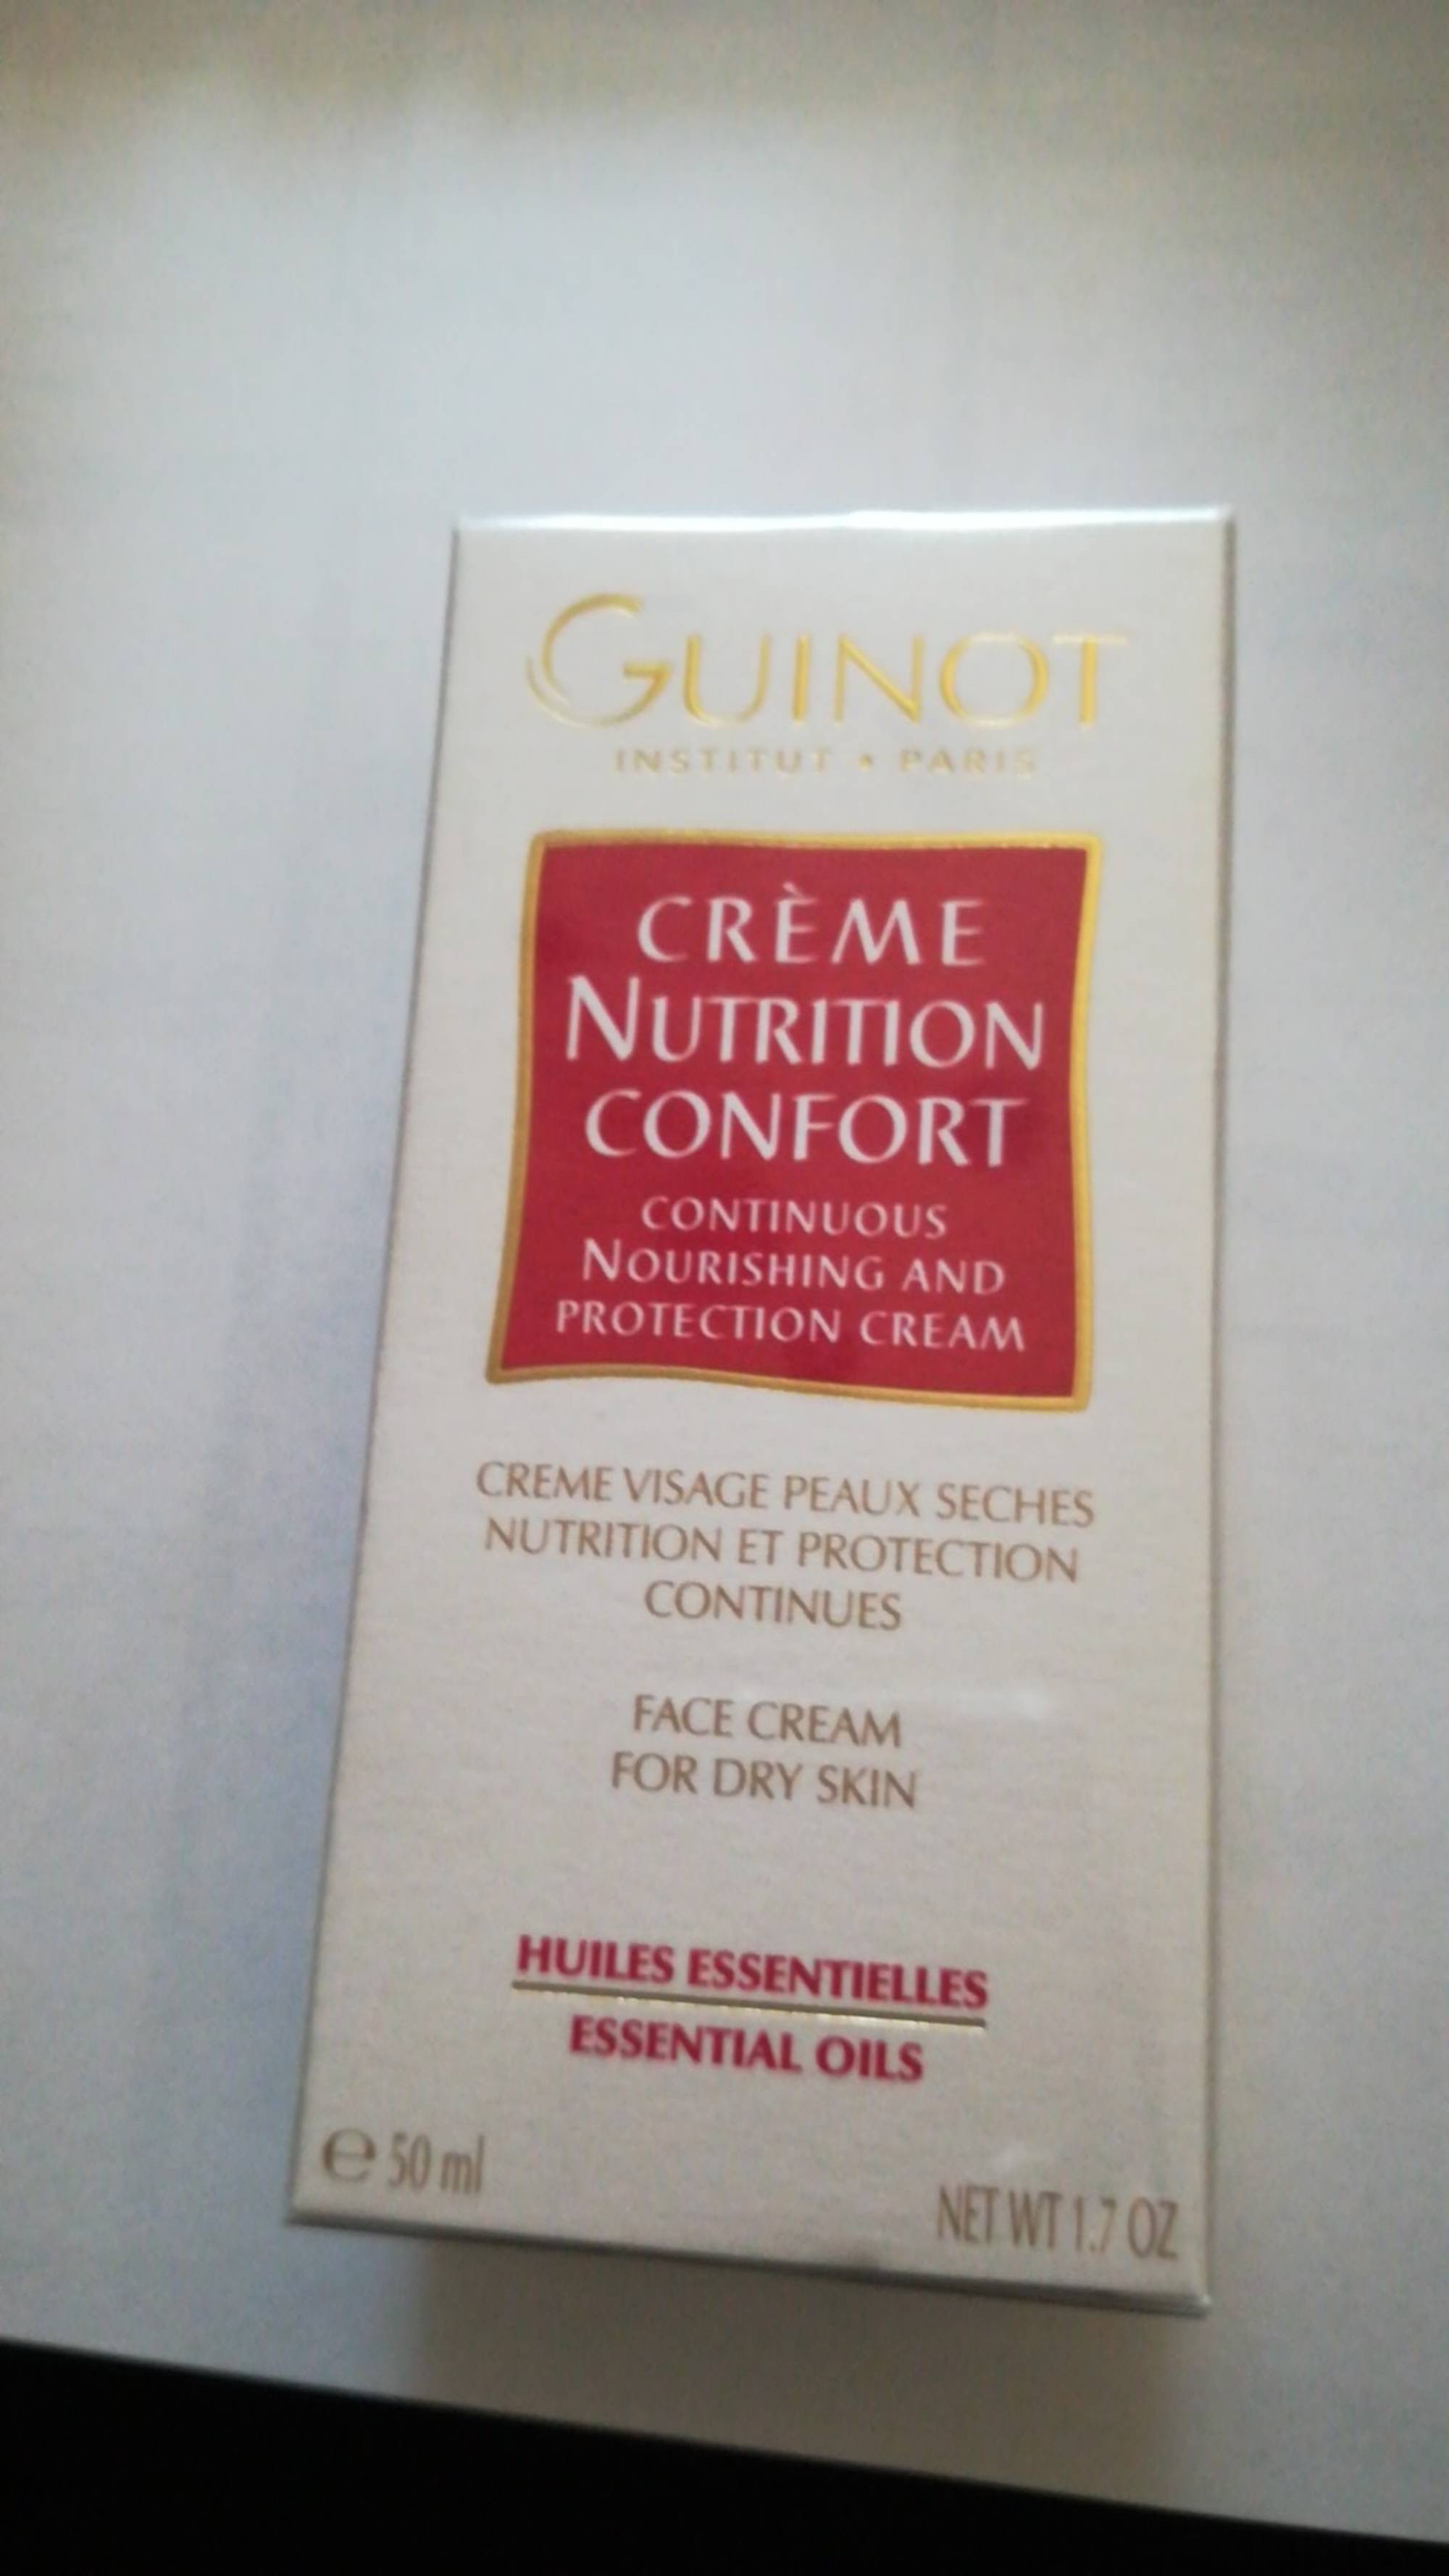 GUINOT - Huiles essentielles - Crème nutrition confort